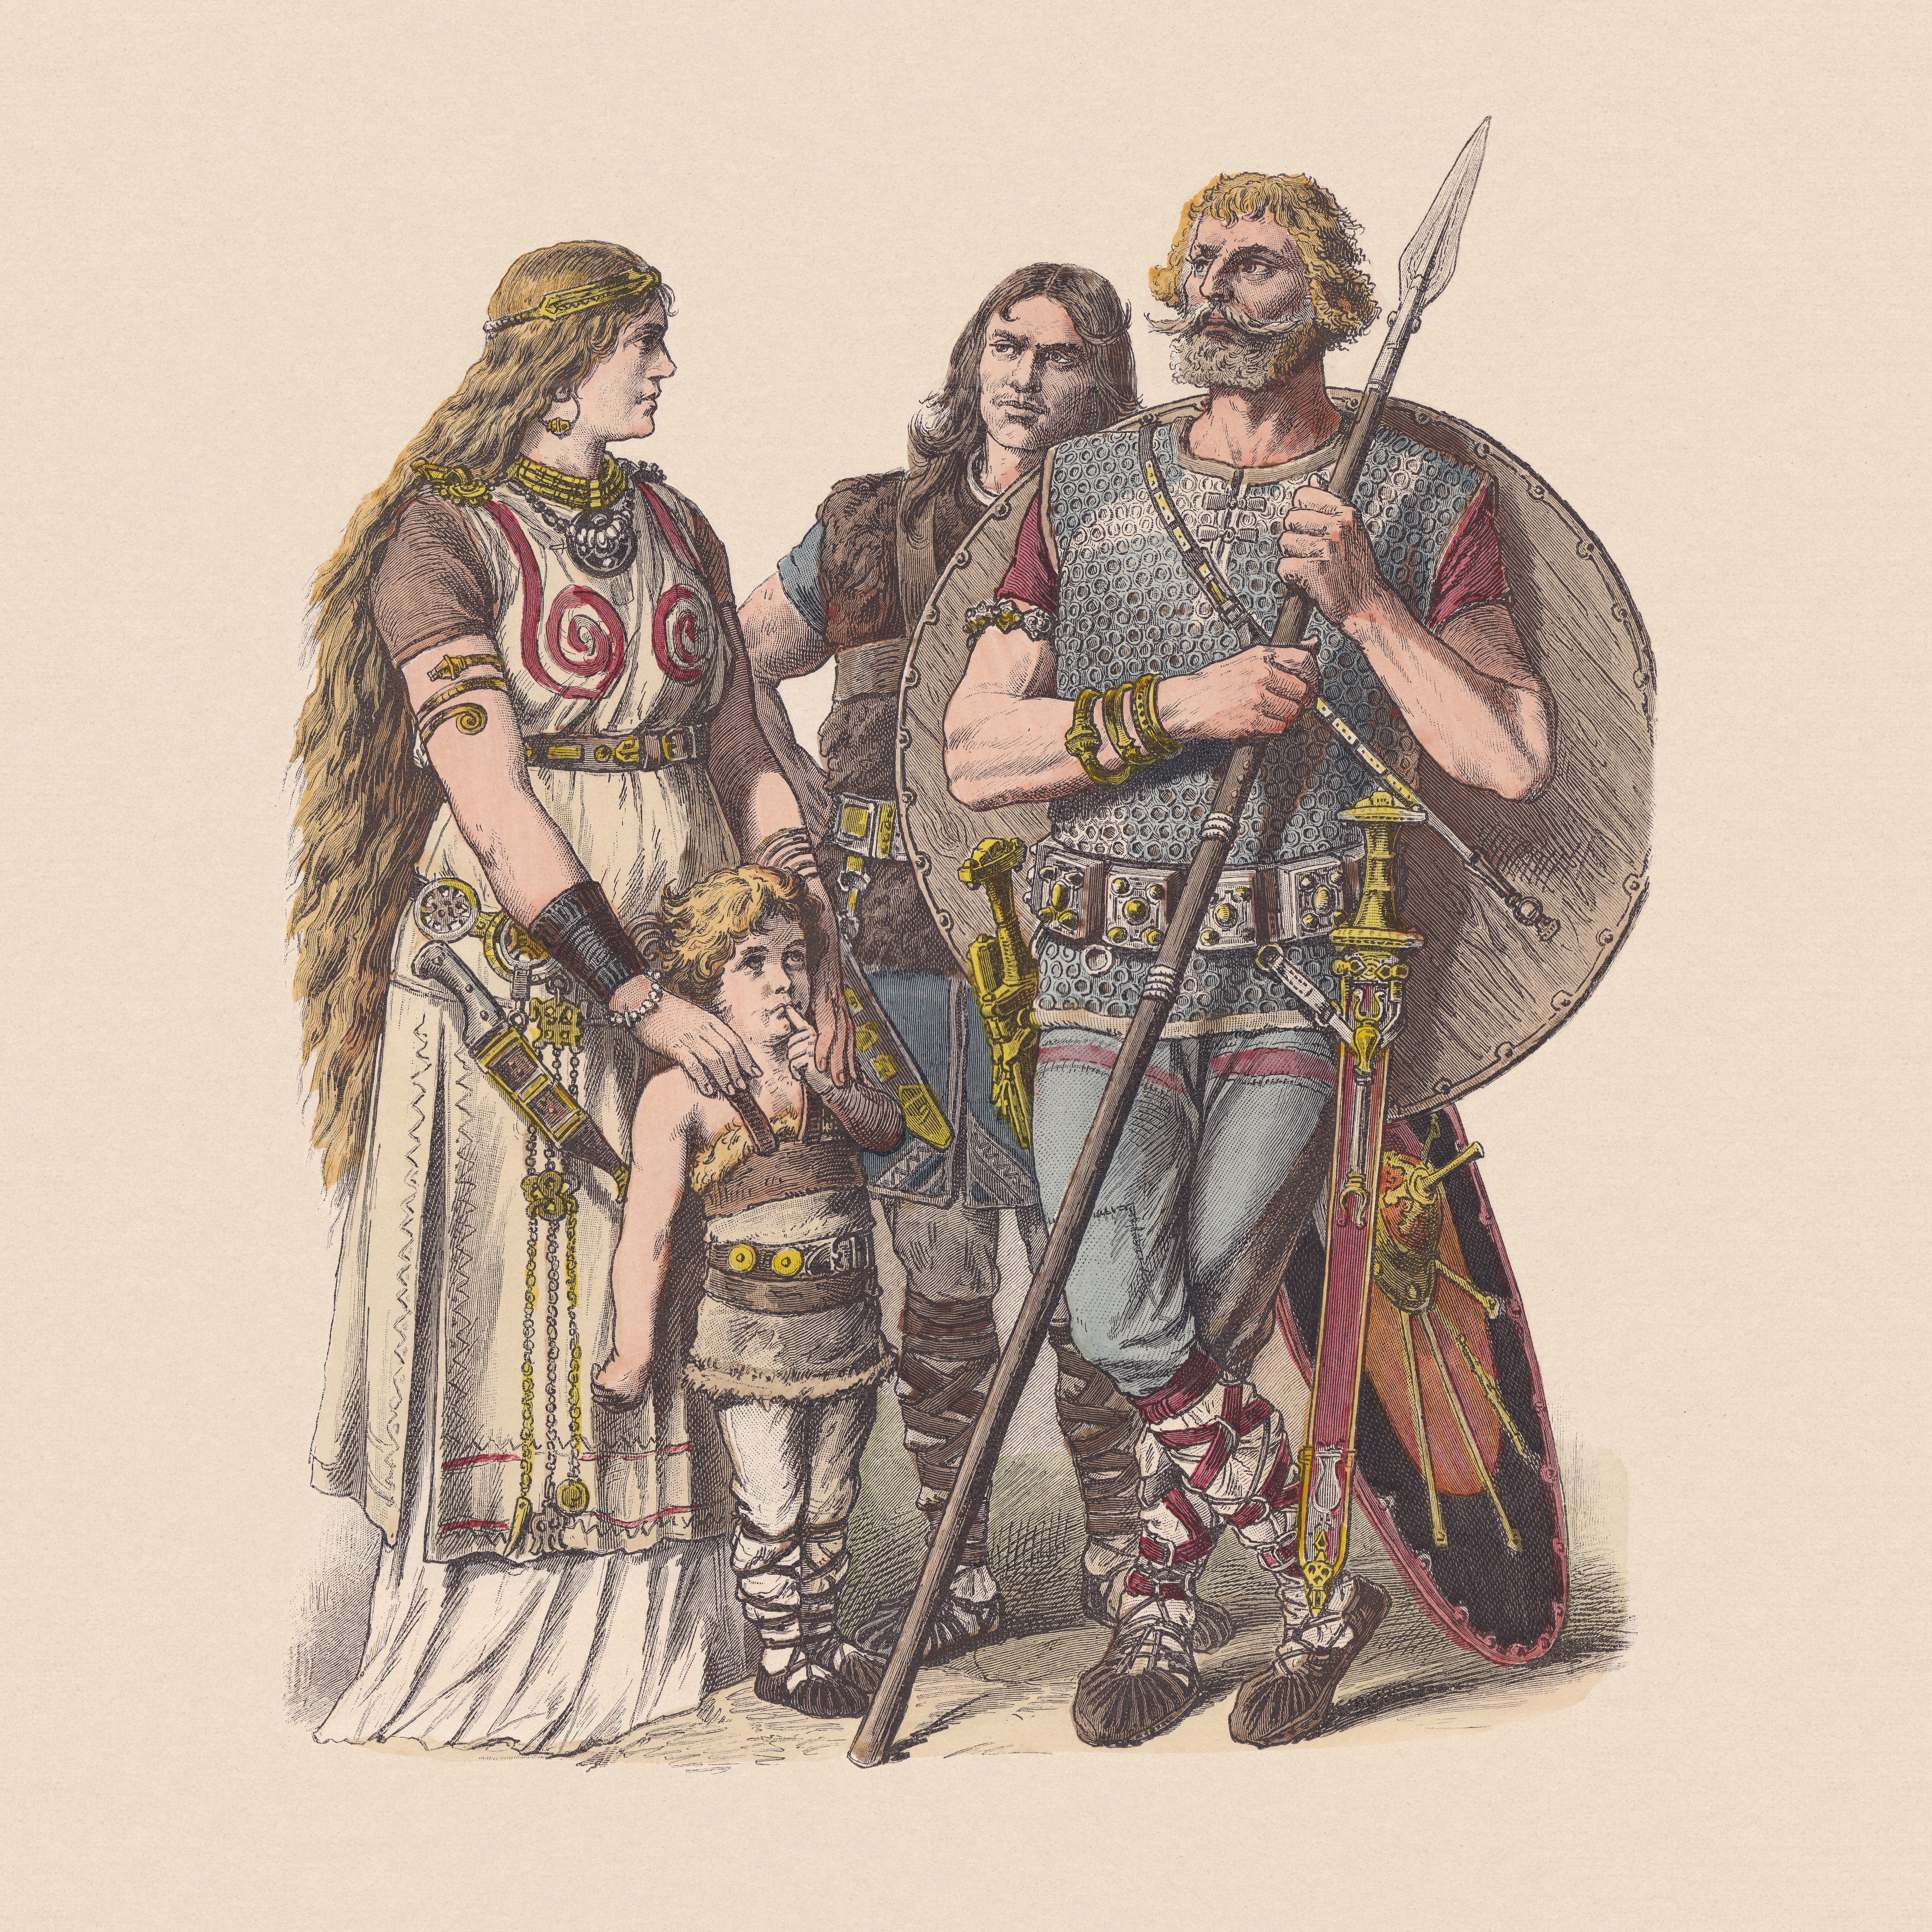 Eine Zeichnung aus dem 19. Jahrhundert zeigt eine Frau mit wallendem Haar und Gewand, zwei kriegerisch ausgerüstete Männer und ein Kind, die in einer Gruppe zusammen stehen. Die Zeichnung veranschaulicht die fehlerhafte und romantisierende Germanenvorstellung dieser Zeit.